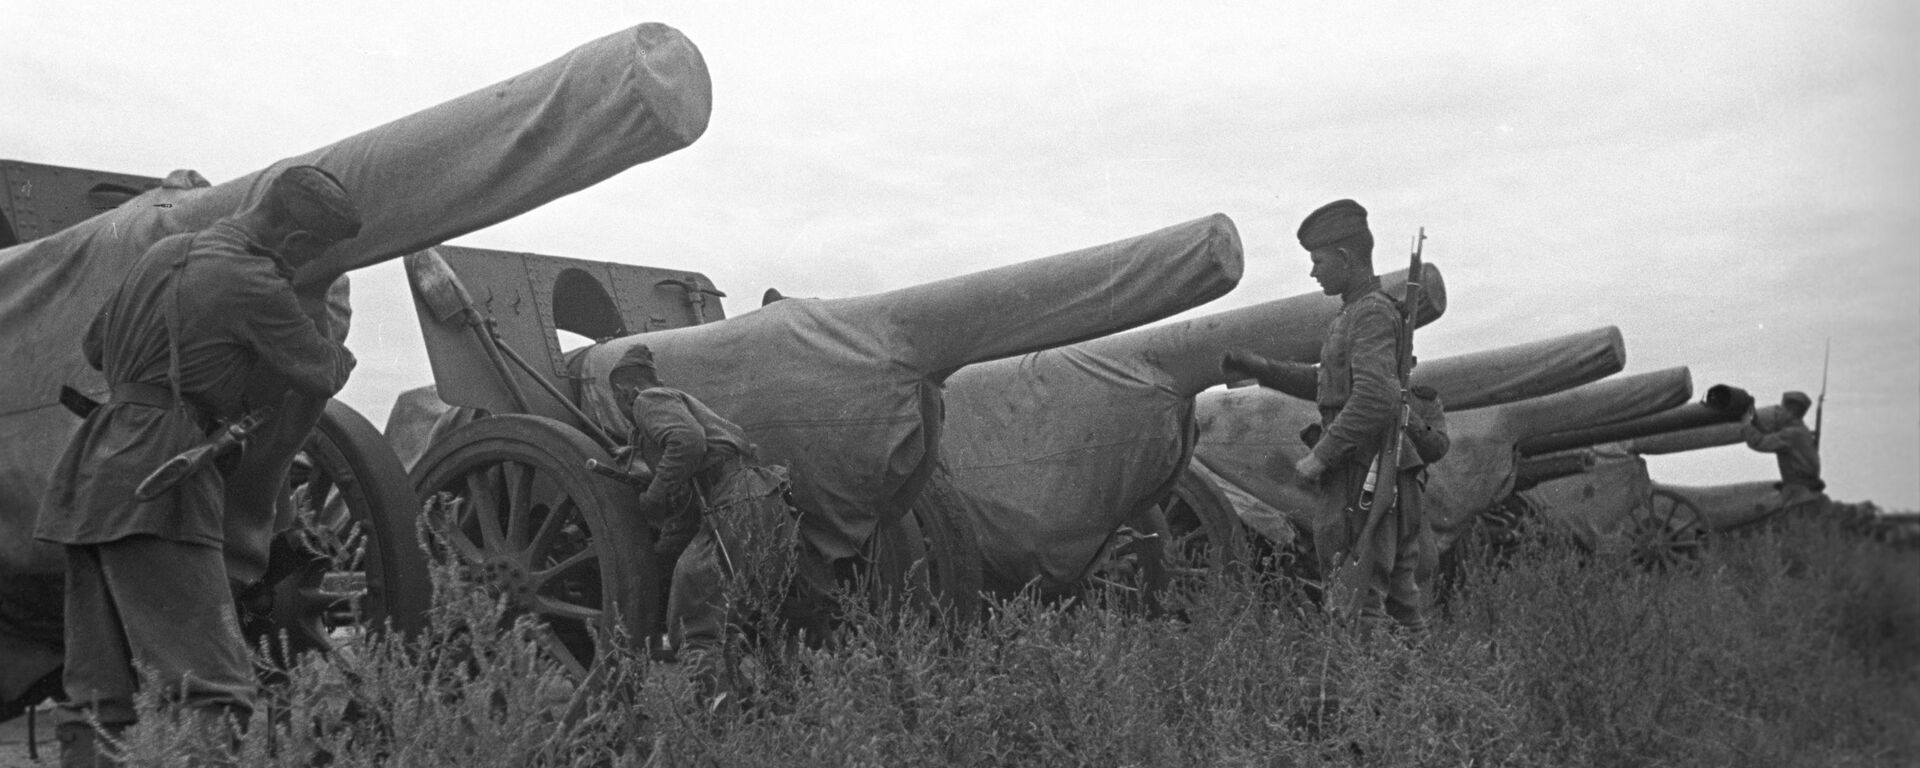 Советско-японская война (9 августа - 3 сентября 1945 года). 2-й Дальневосточный фронт. Японская артиллерия, захваченная советскими войсками. - Sputnik Абхазия, 1920, 08.08.2021